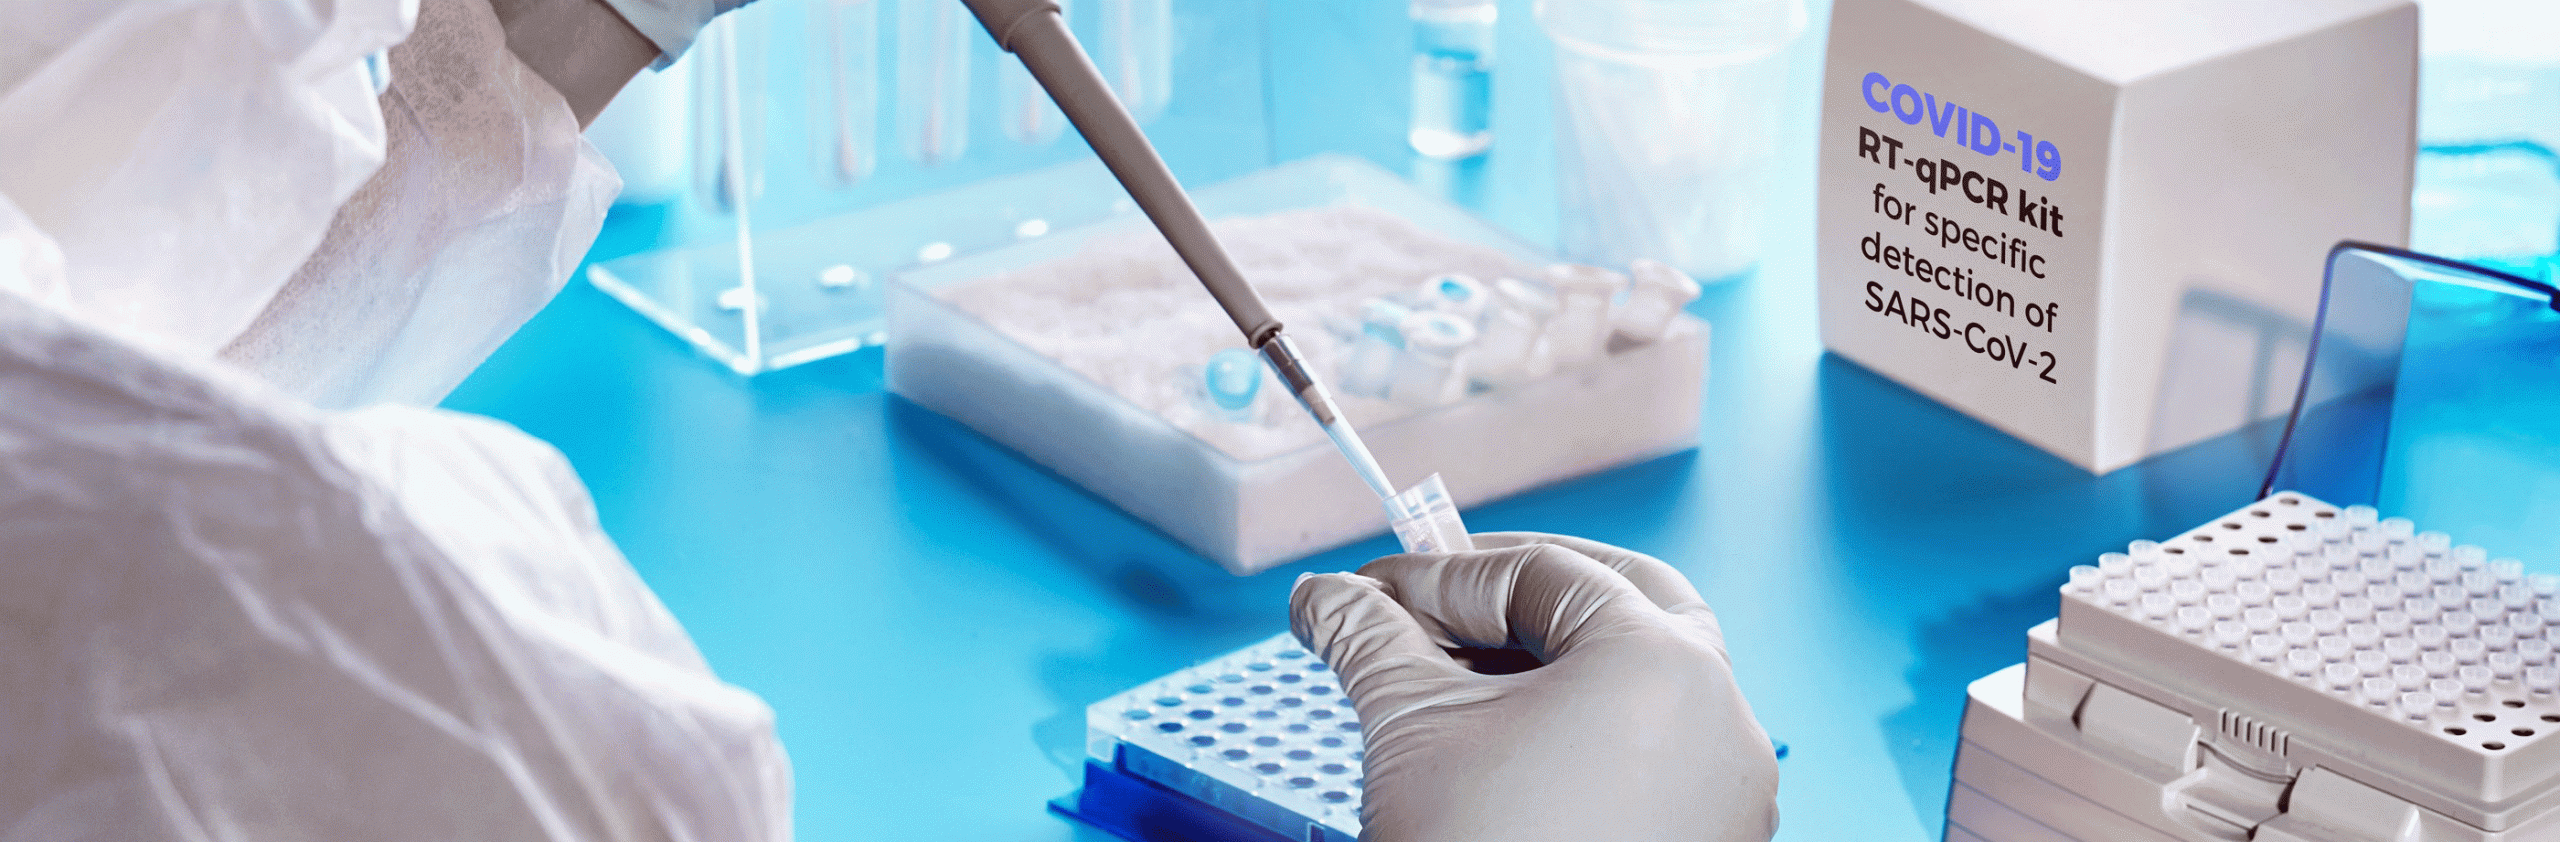 انجام آزمایش PCR کوید-19